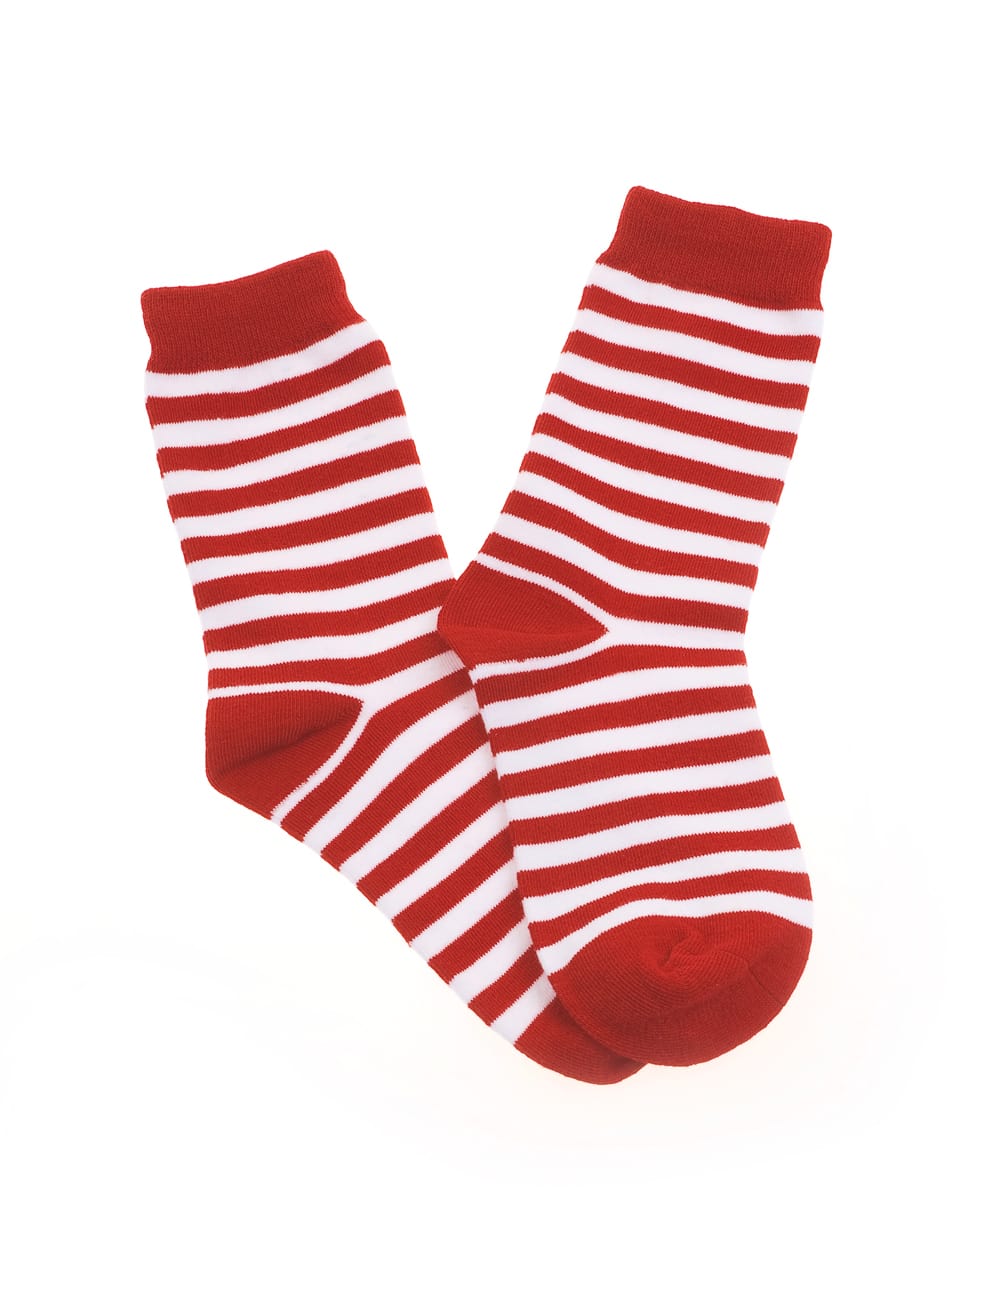 Socken gestreift rot/weiß 30-34